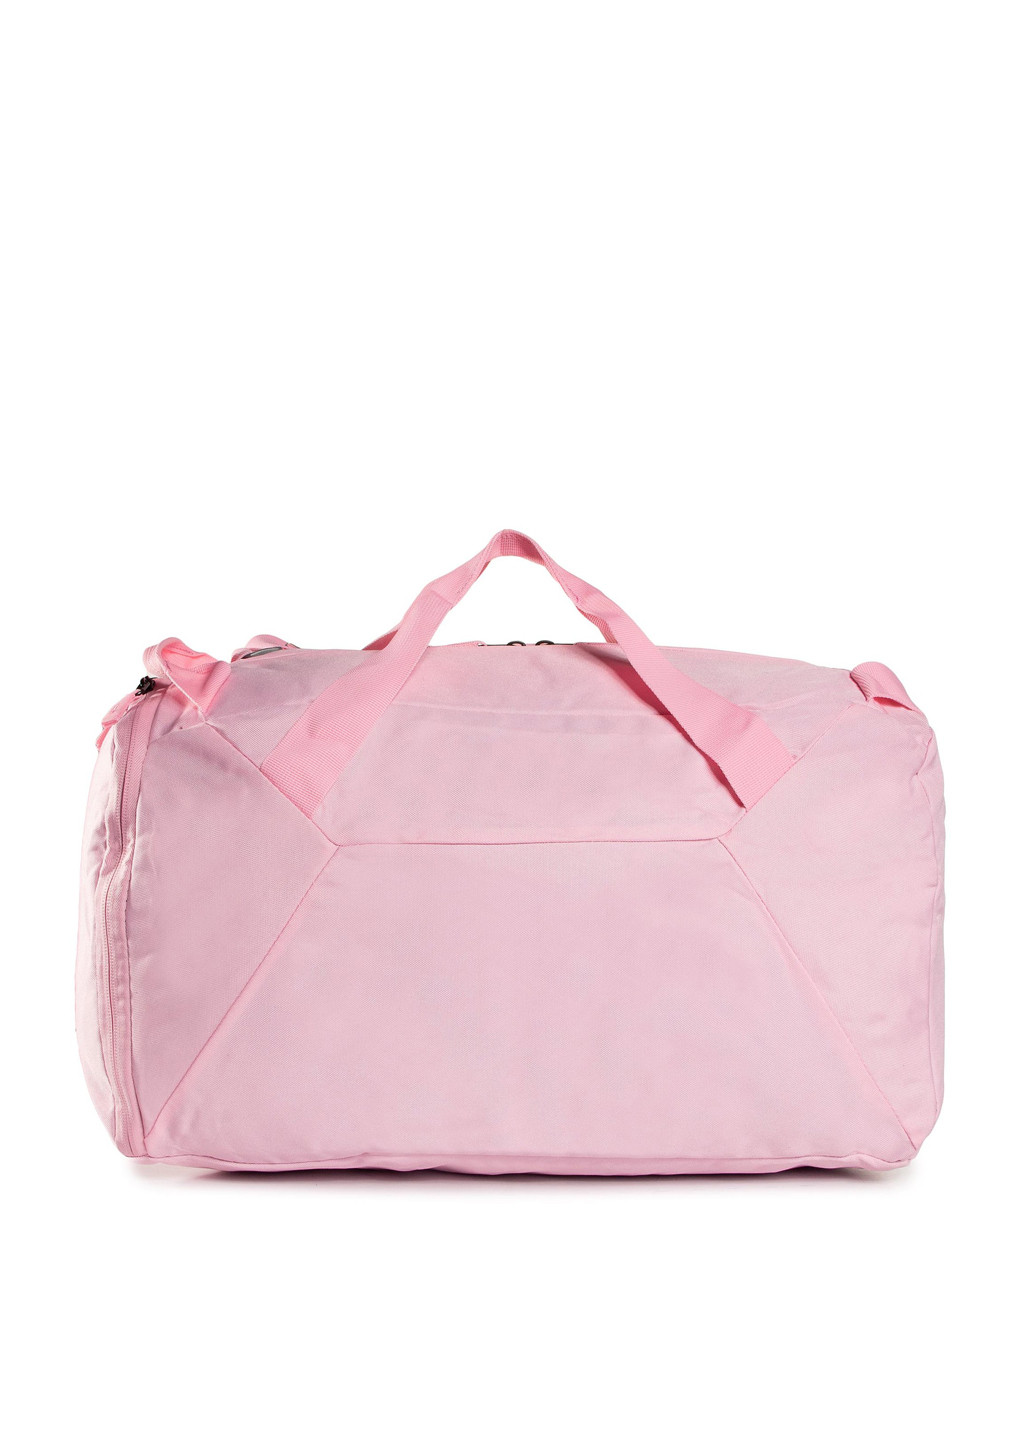 Спортивні сумки BST-S-101-36-04 Sprandi логотип розовая спортивная